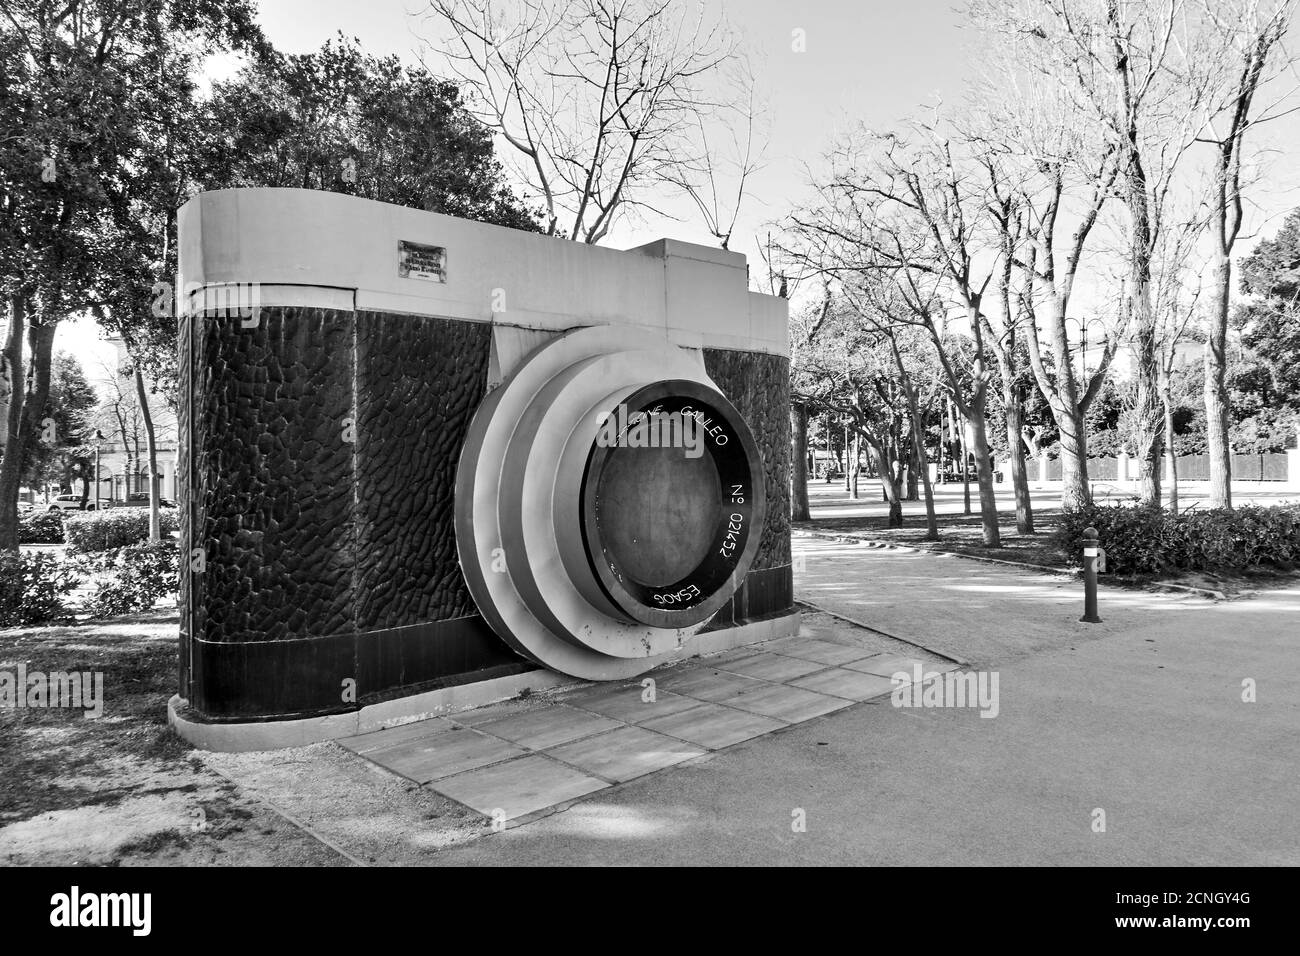 Rimini, Italie - 2 mars 2020: La caméra (1948) - Monument au parc Federico Fellini à Rimini. Repère. Photographie en noir et blanc Banque D'Images